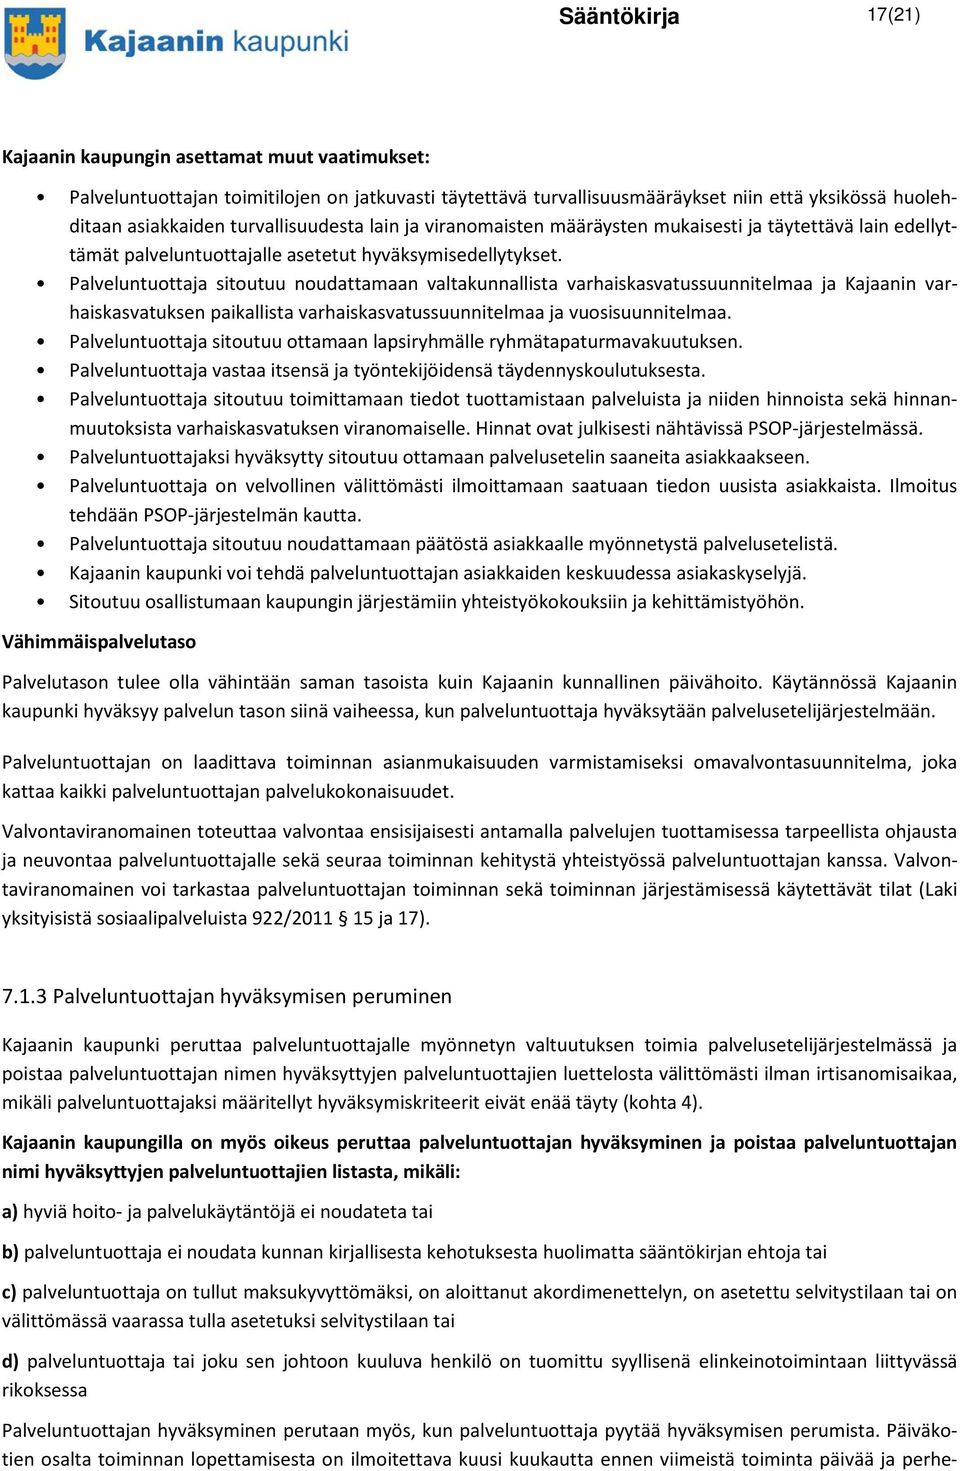 Palveluntuottaja sitoutuu noudattamaan valtakunnallista varhaiskasvatussuunnitelmaa ja Kajaanin varhaiskasvatuksen paikallista varhaiskasvatussuunnitelmaa ja vuosisuunnitelmaa.